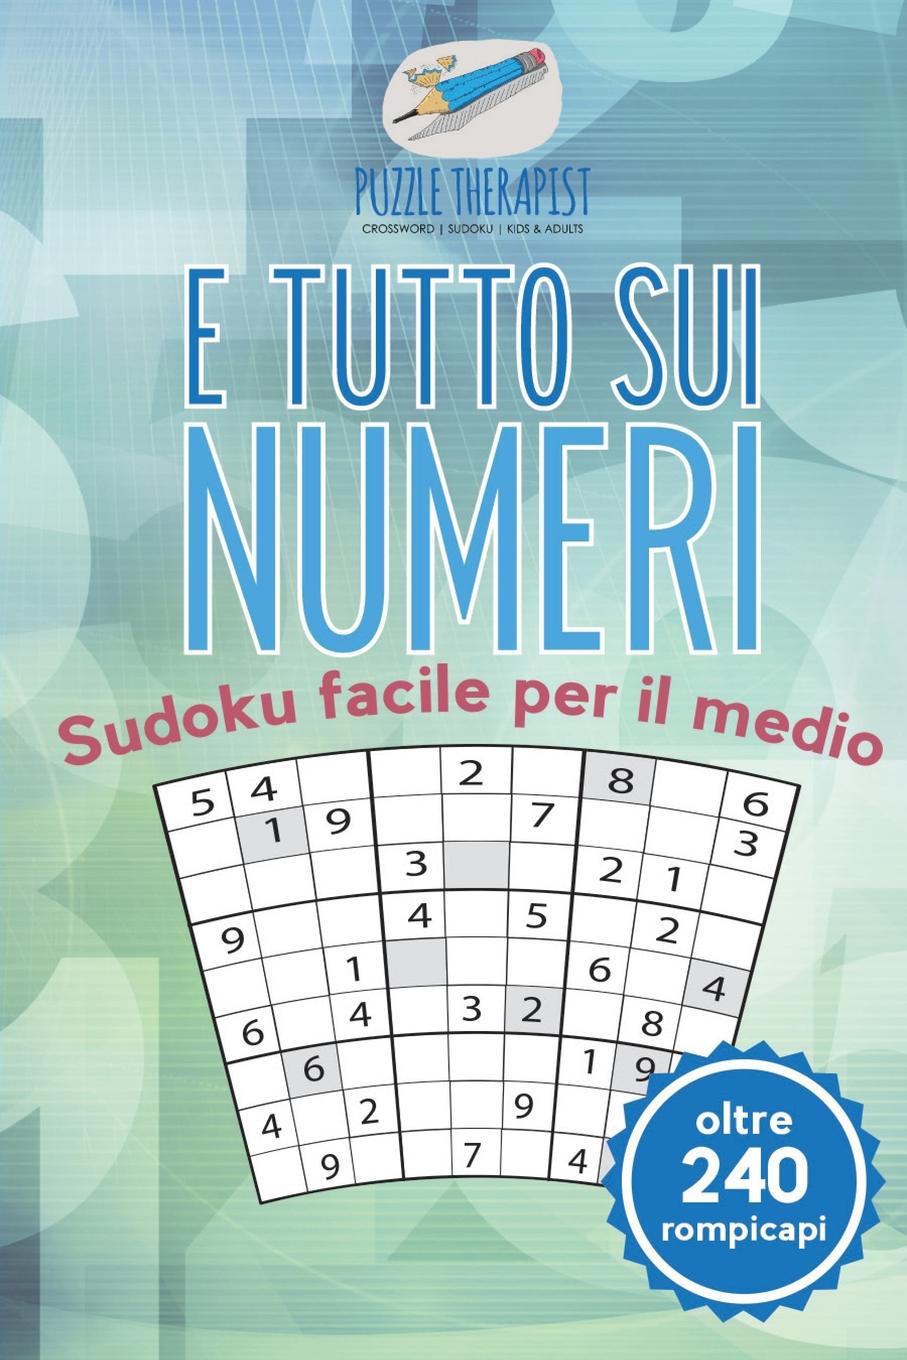 Puzzle Therapist E tutto sui numeri . Sudoku facile per il medio (oltre 240 rompicapi)